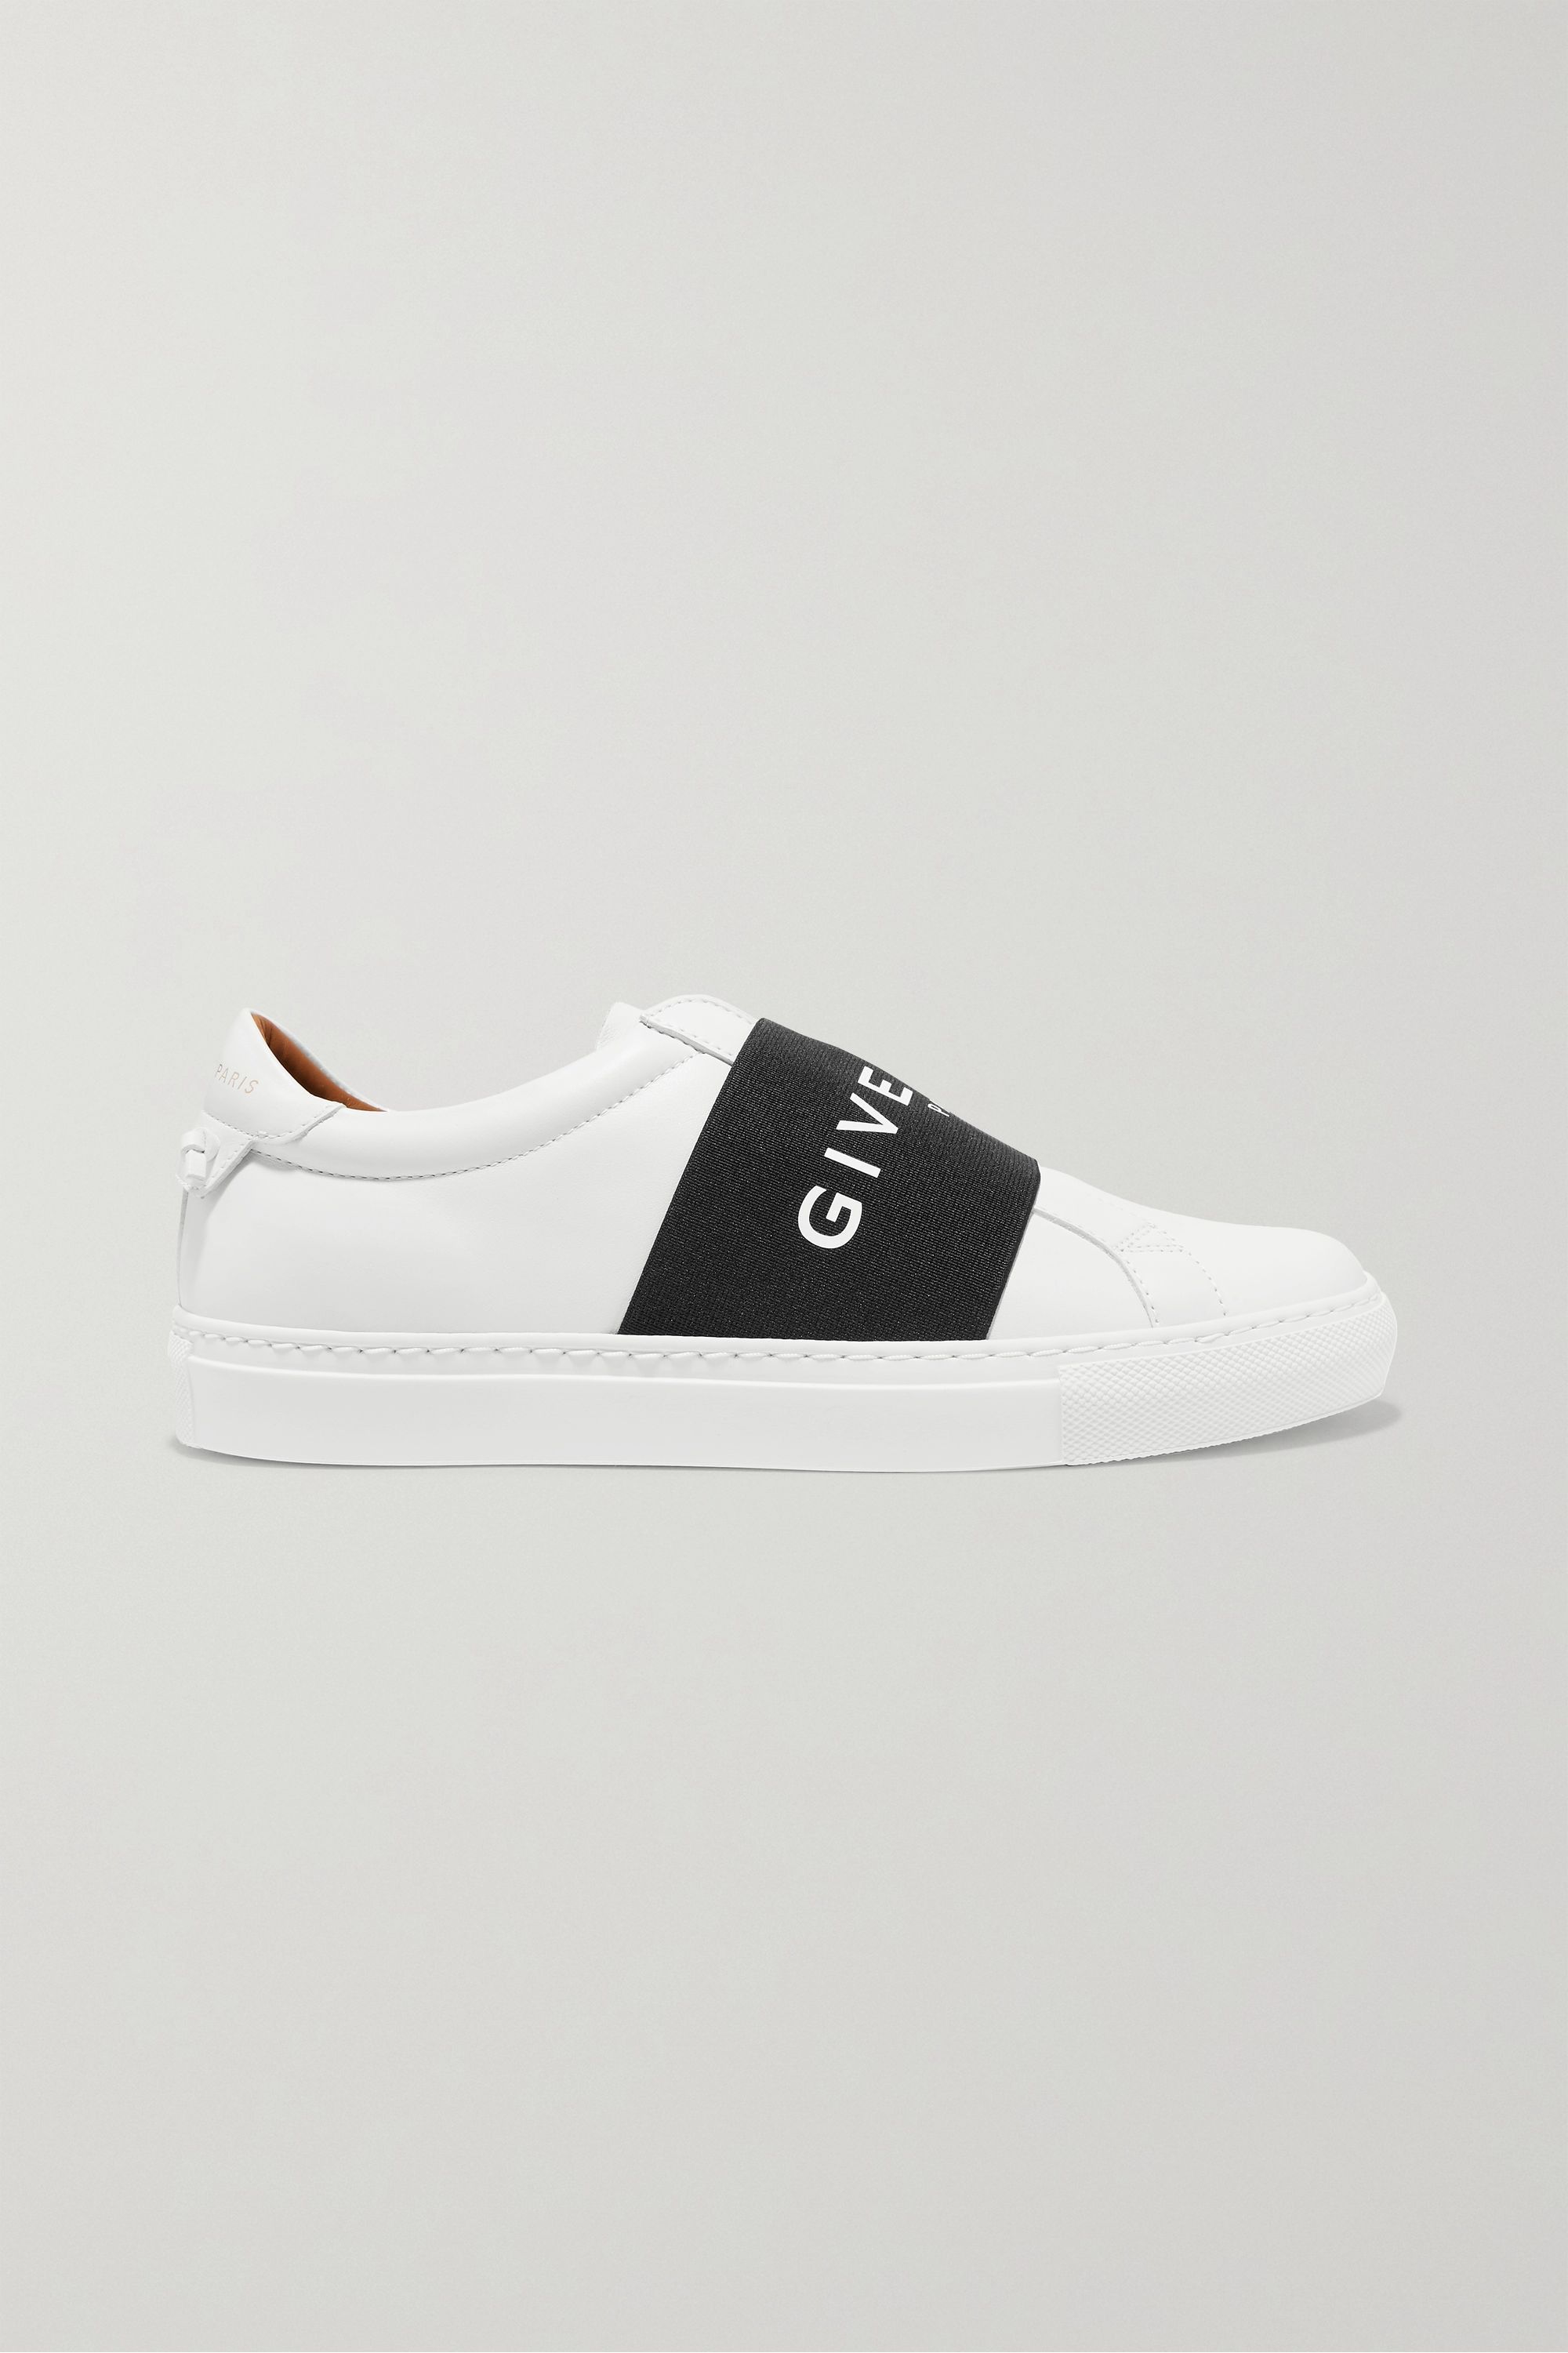 designer black slip on sneakers